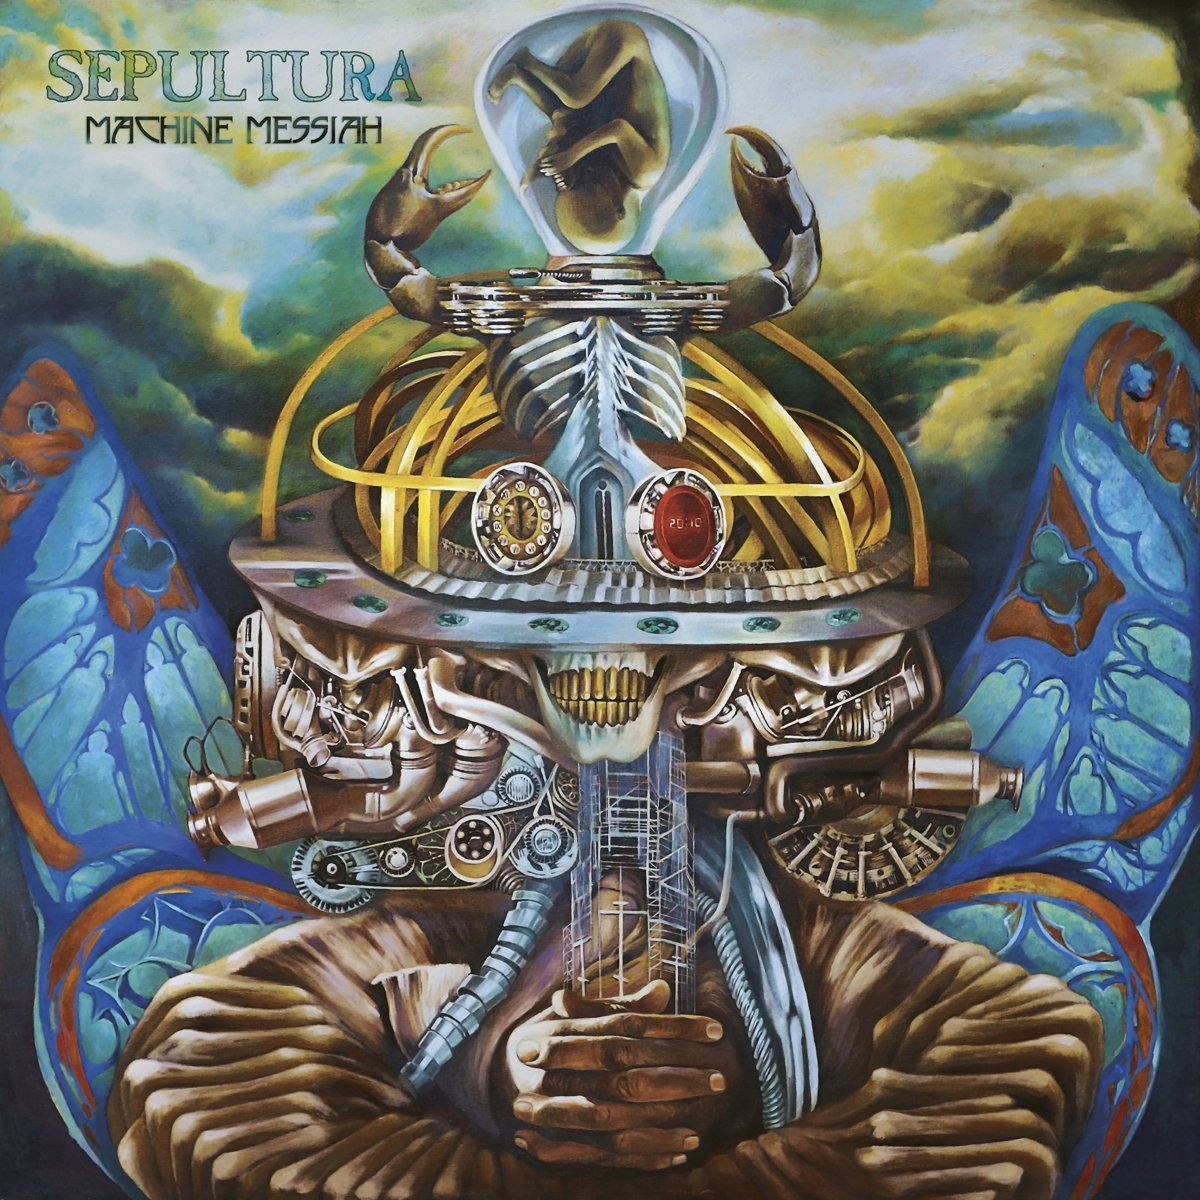 Sepultura - Machine Messiah (Január 13.)<br /><br />Most komolyan? Hogy a francba ne lehetne várni egy új Sepu albumot? Lehet, hogy kicsit másabb a stílus, mint a már két évtizede véget ért Cavalera-erának, de be kell vallanunk, hogy Andreasék azóta sem felejtettek el zenélni. Ráadásul az előzetesek alapján az utóbbi idők egyik legjobb Sepultura-lemeze fog pénteken a boltokba kerülni.